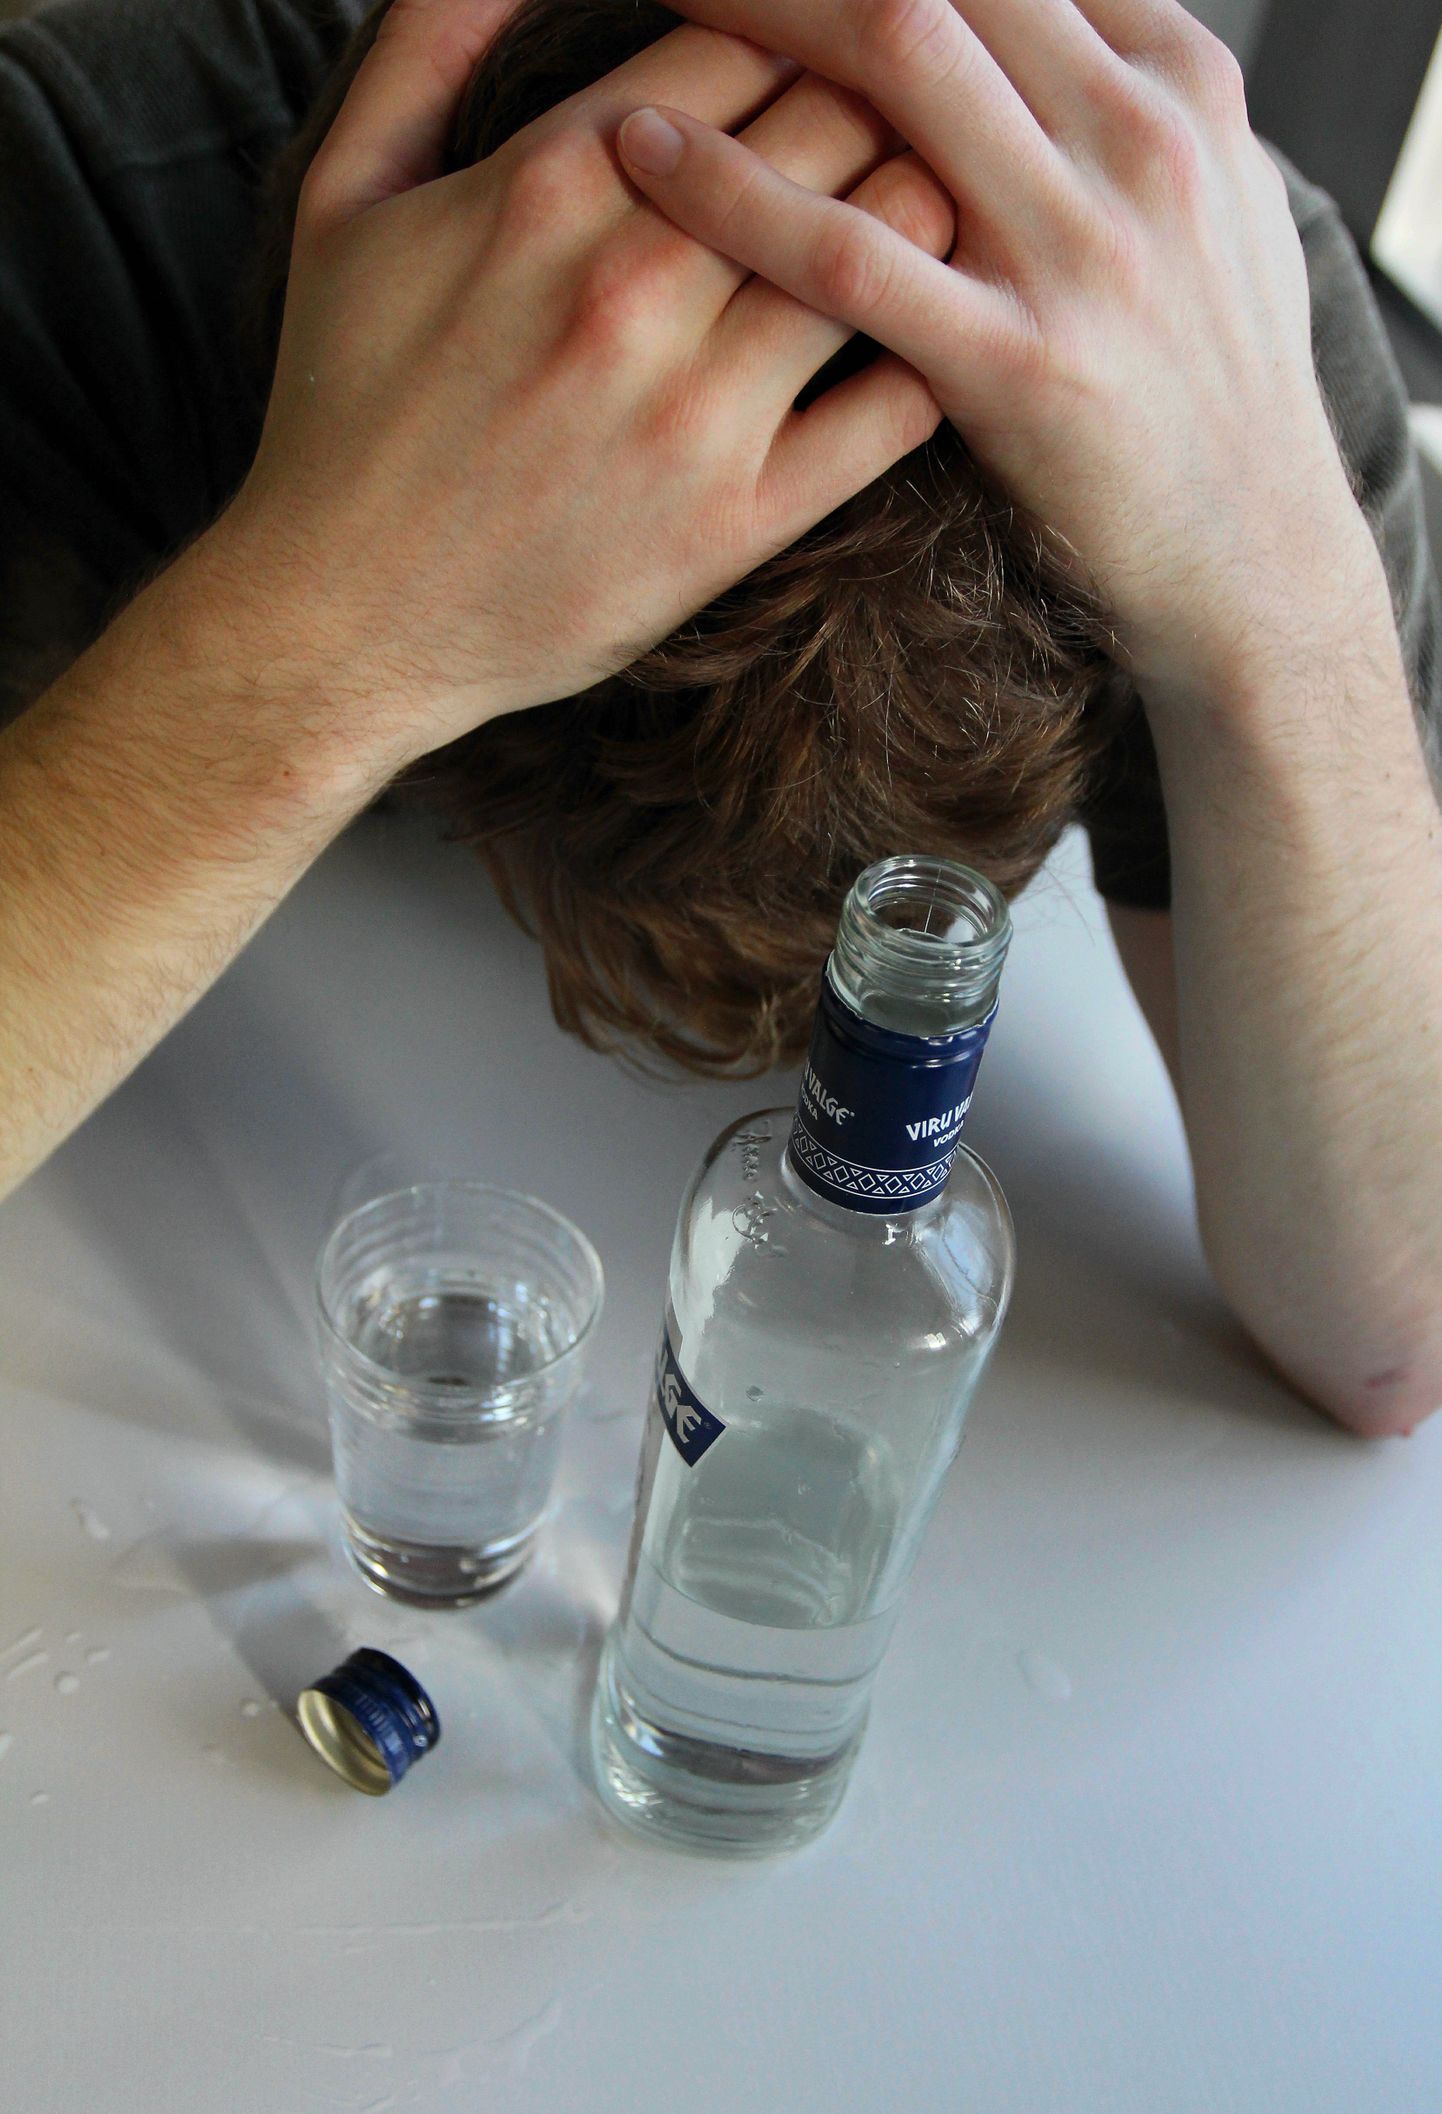 Anonüümsed Alkohoolikud saavad aidata vaid siis, kui inimene ise soovib joomist maha jätta.